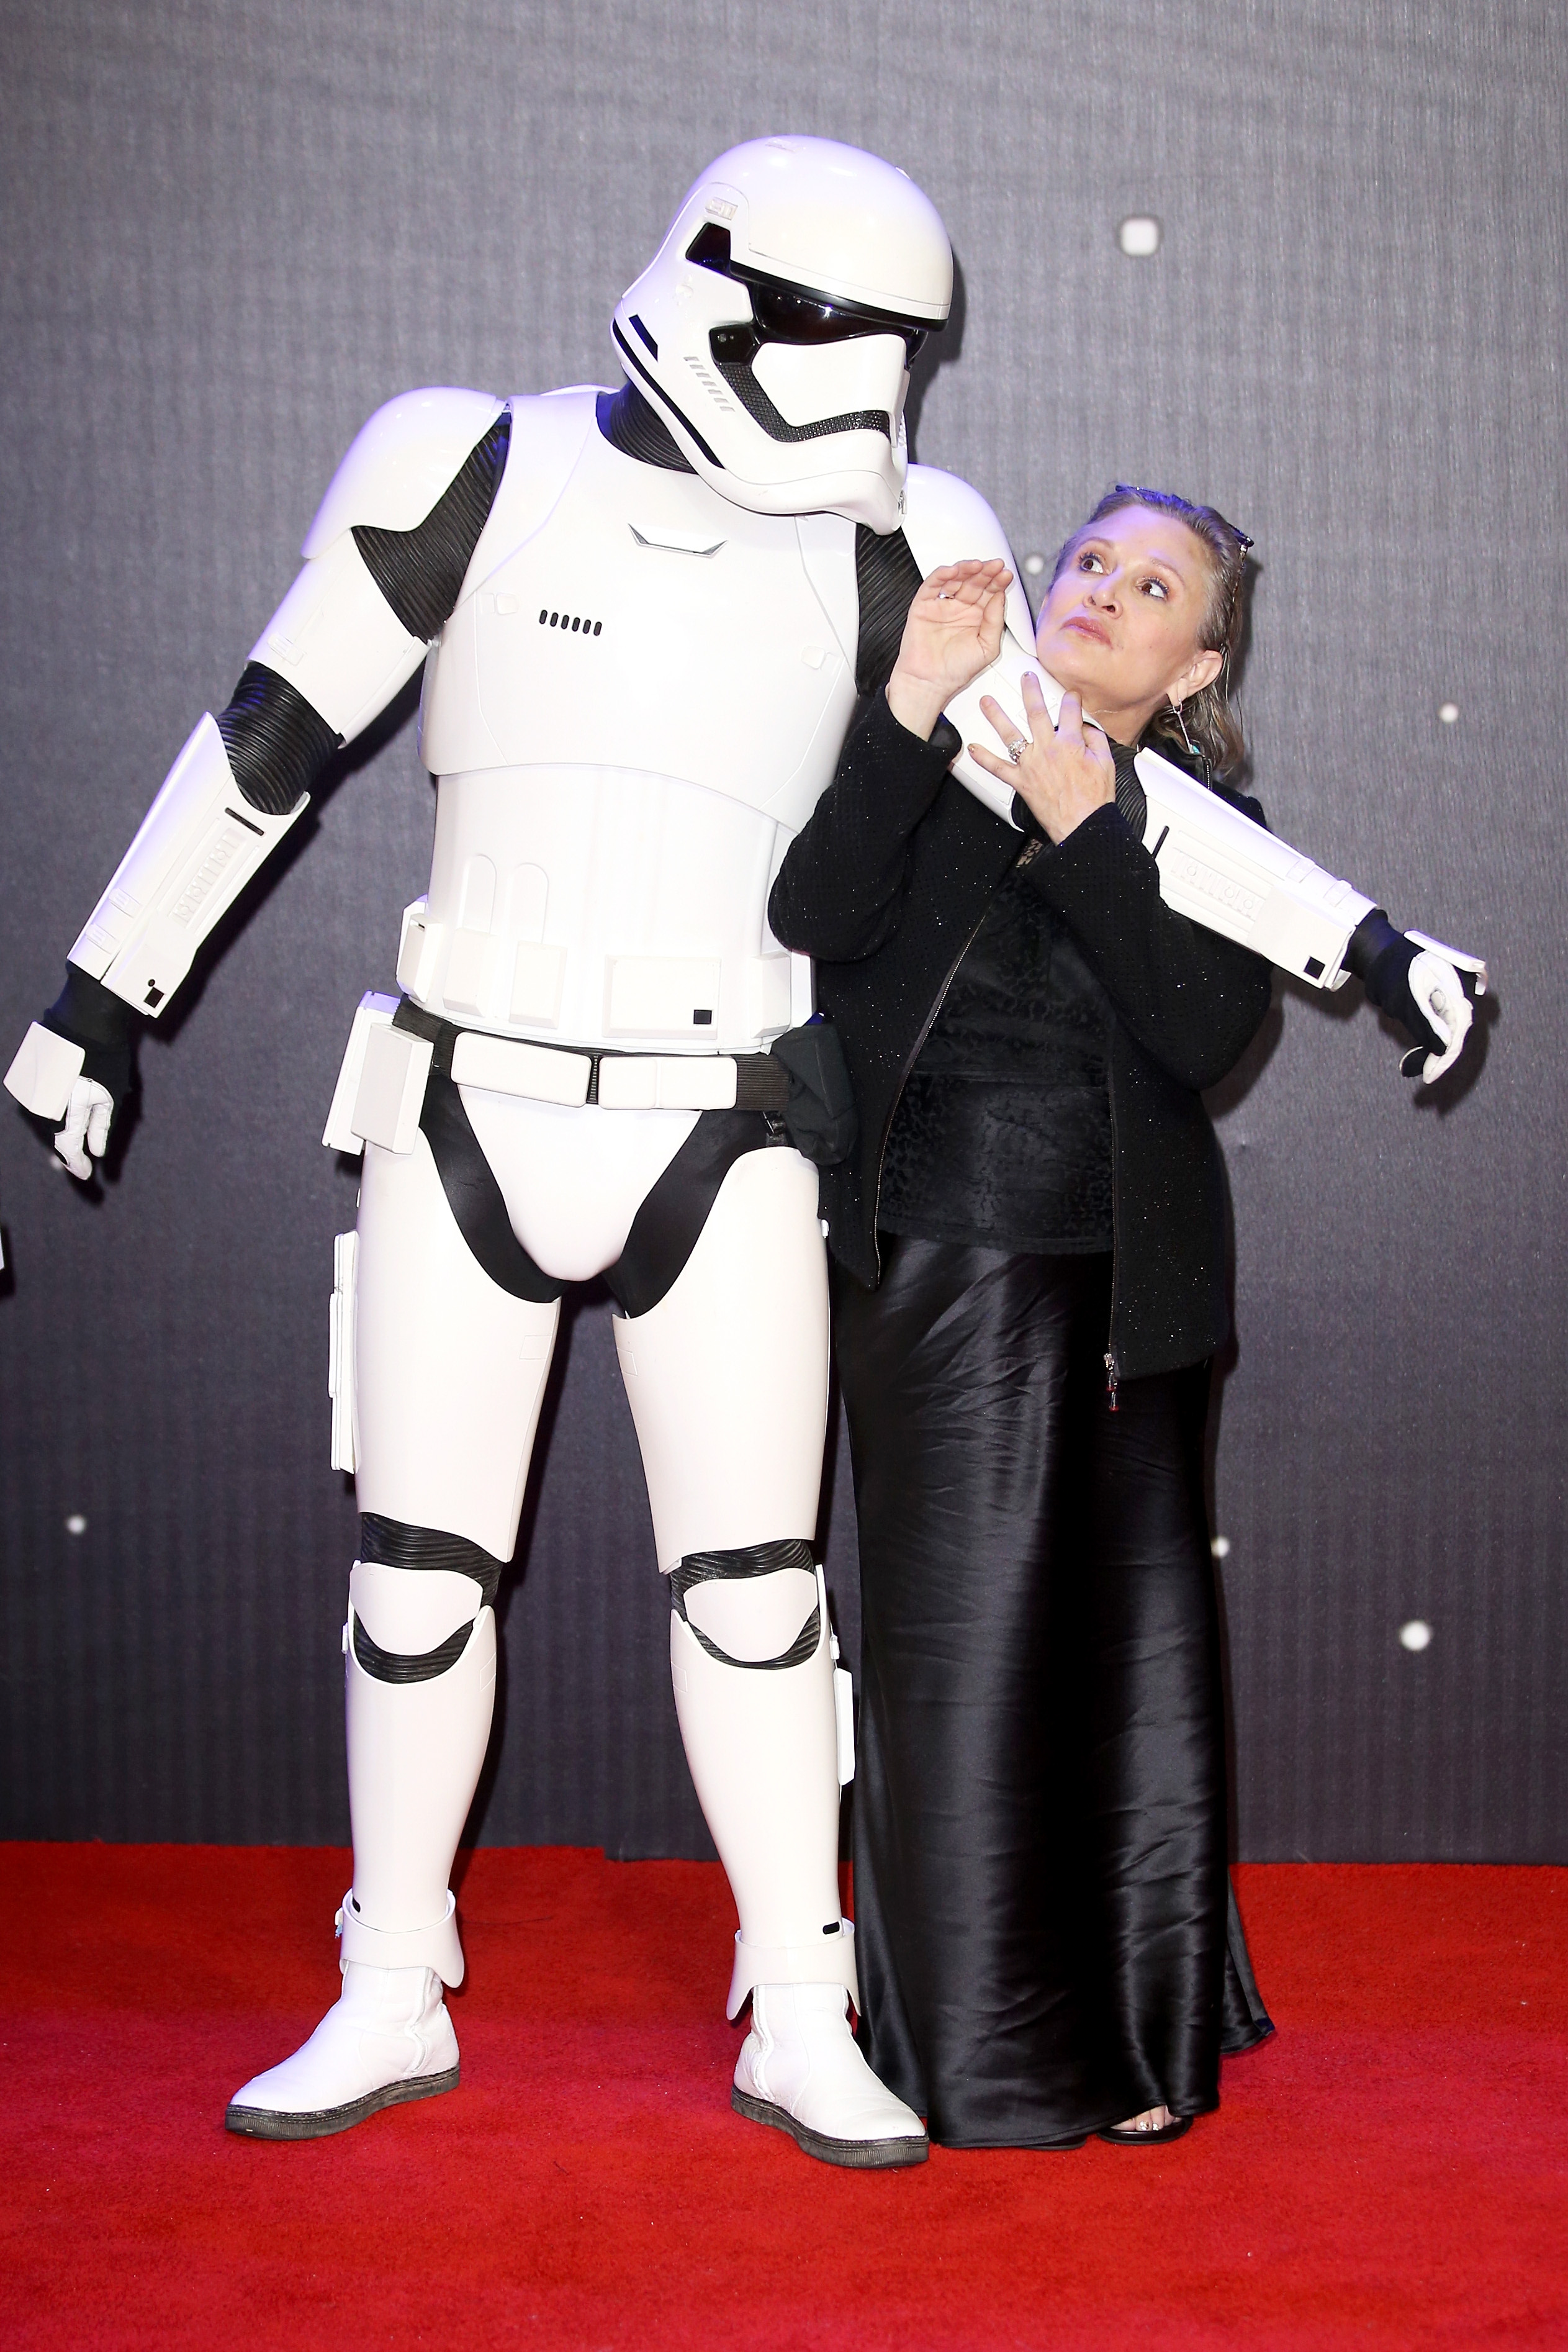 Carrie fisher et un Stormtrooper de "Star Wars" lors de la première européenne de "Star Wars : The Force Awakens" à Londres, 2015 | Source : Getty Images